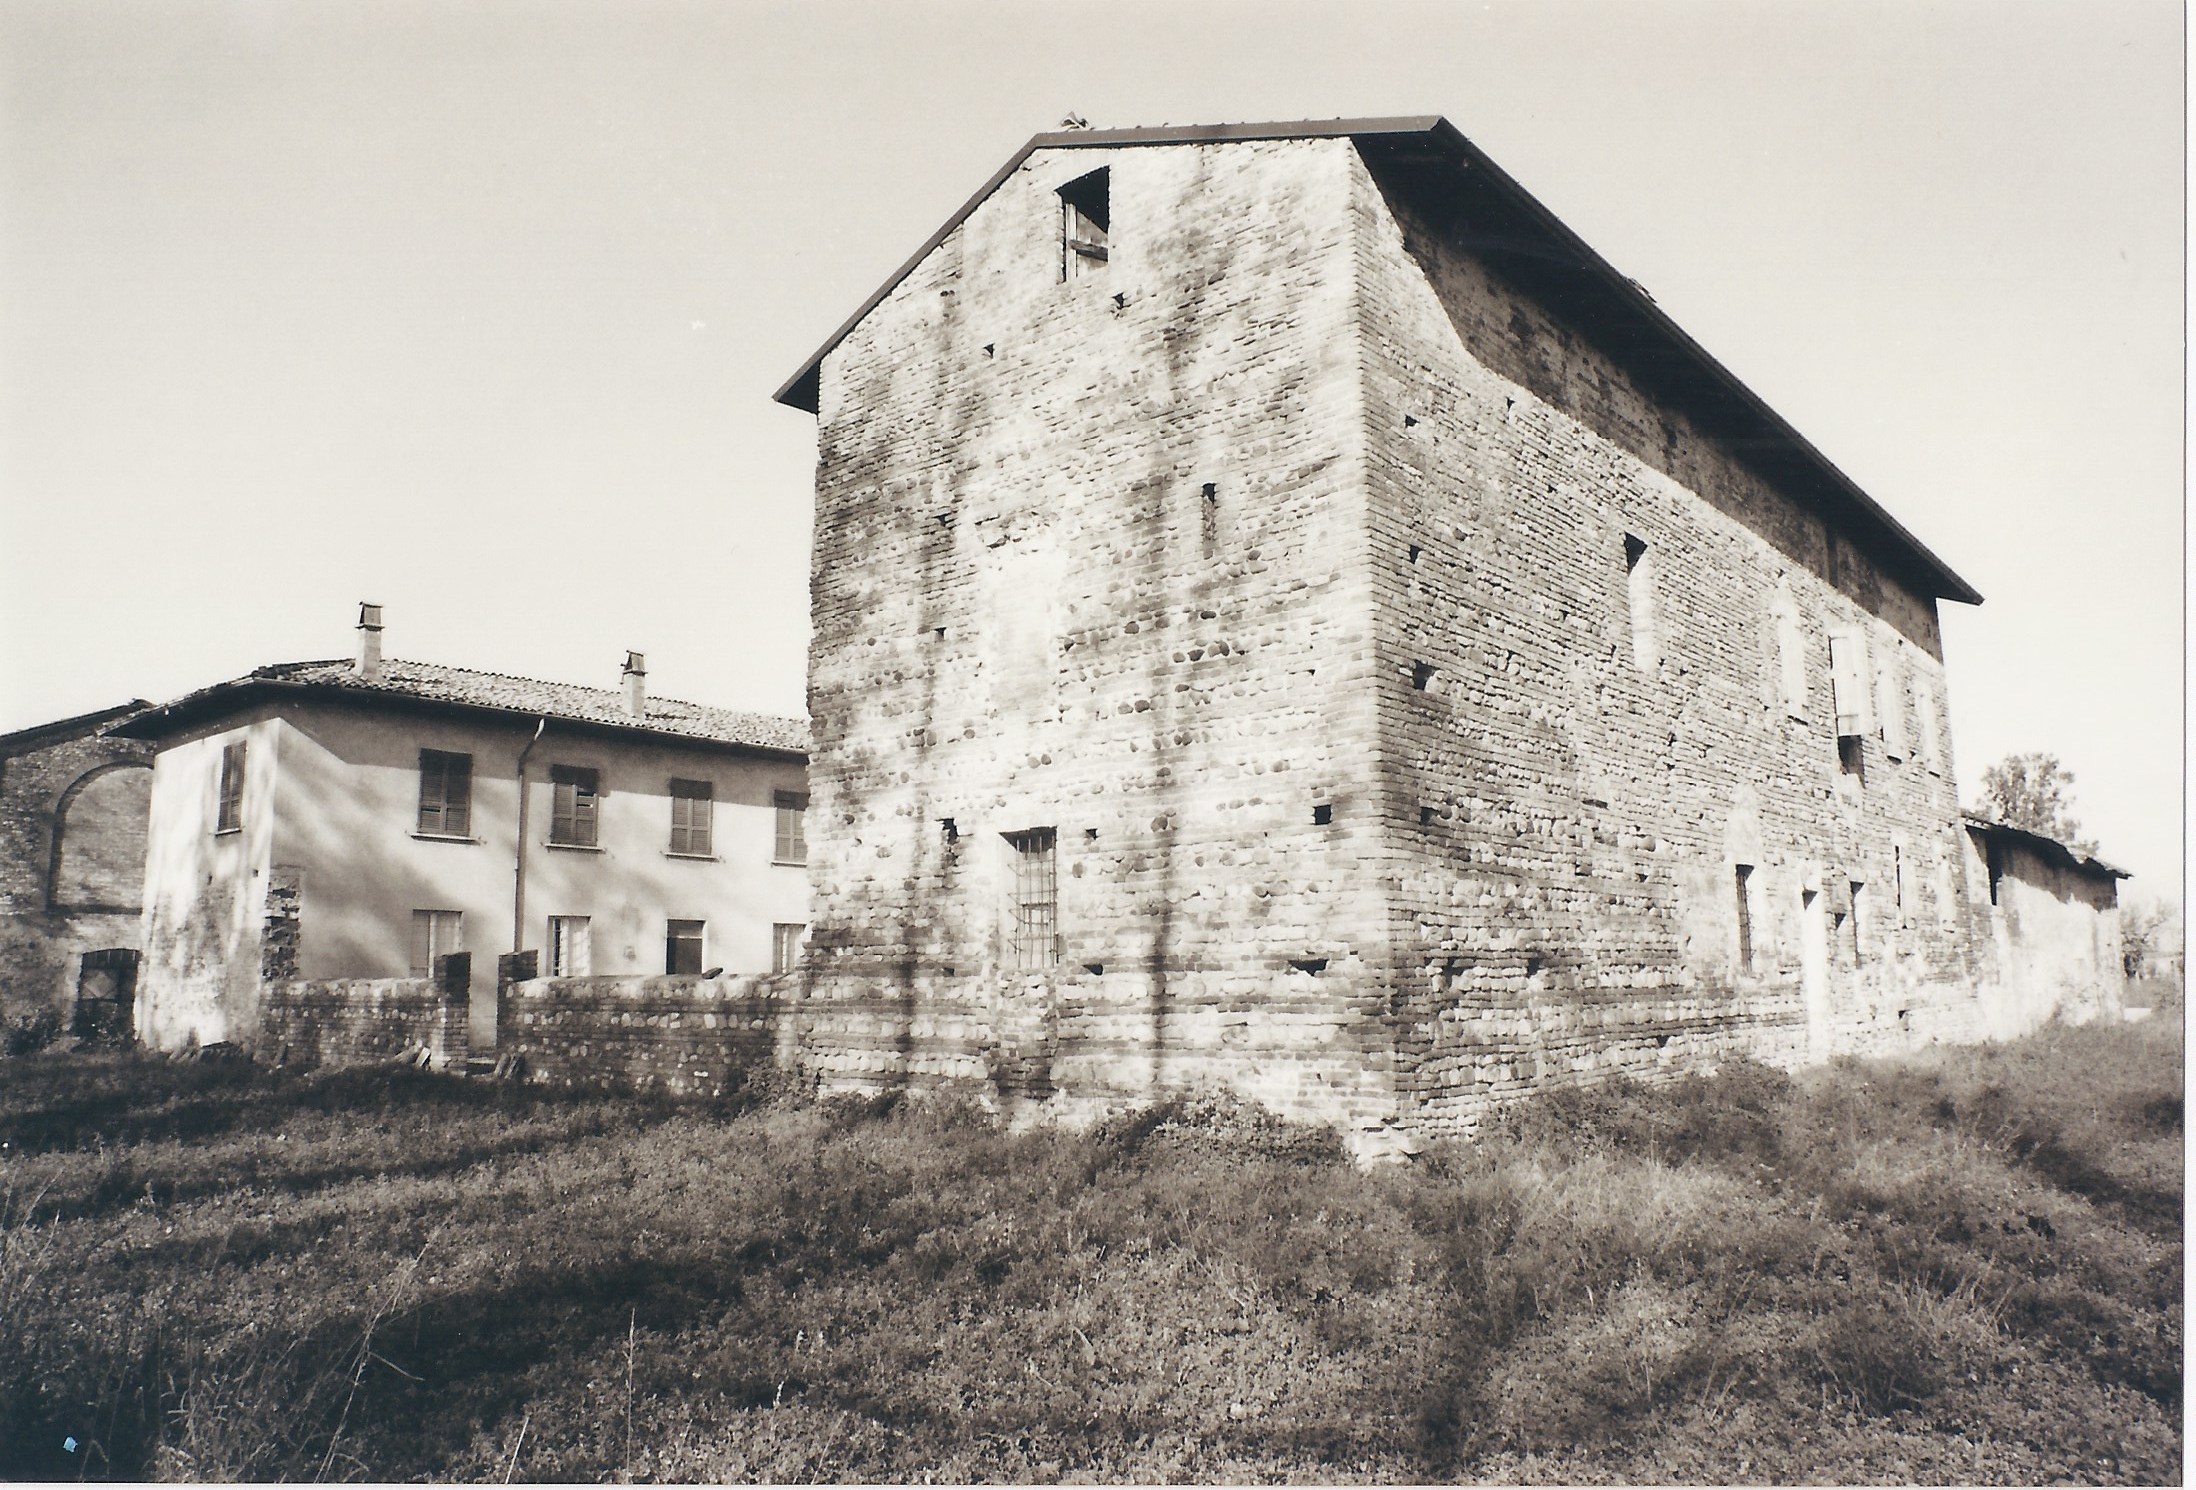 Castello di Ciavernasco (castello, fortificato) - Gossolengo (PC)  (XIV)